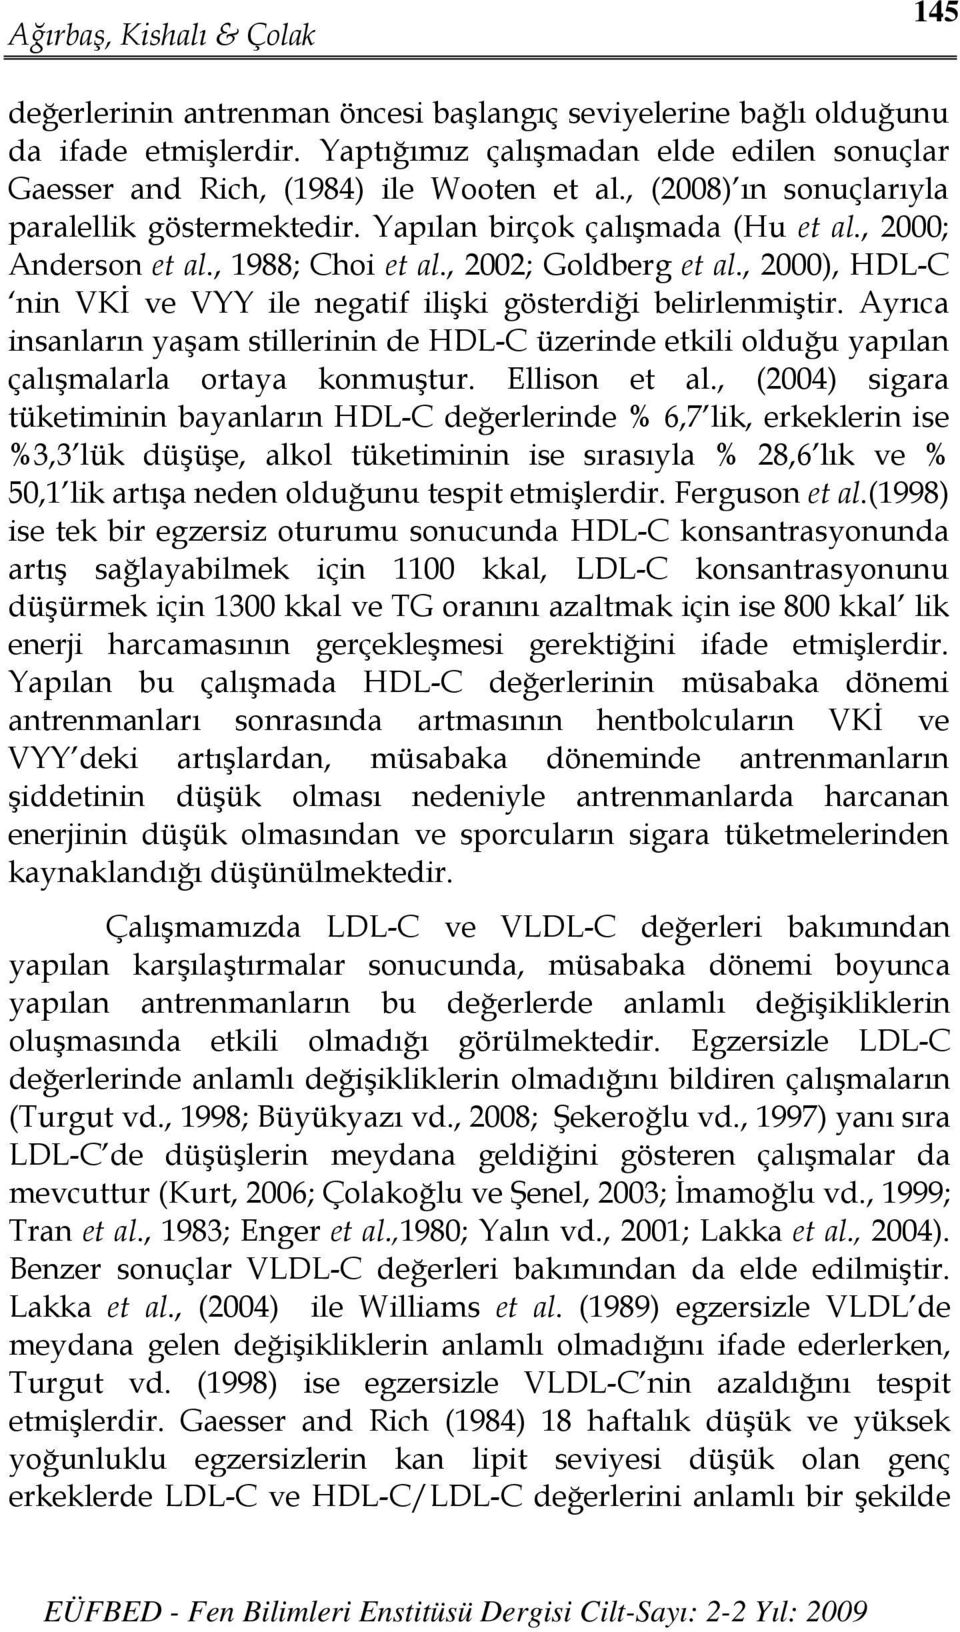 , 2000), HDL-C nin VKİ ve VYY ile negatif ilişki gösterdiği belirlenmiştir. Ayrıca insanların yaşam stillerinin de HDL-C üzerinde etkili olduğu yapılan çalışmalarla ortaya konmuştur. Ellison et al.